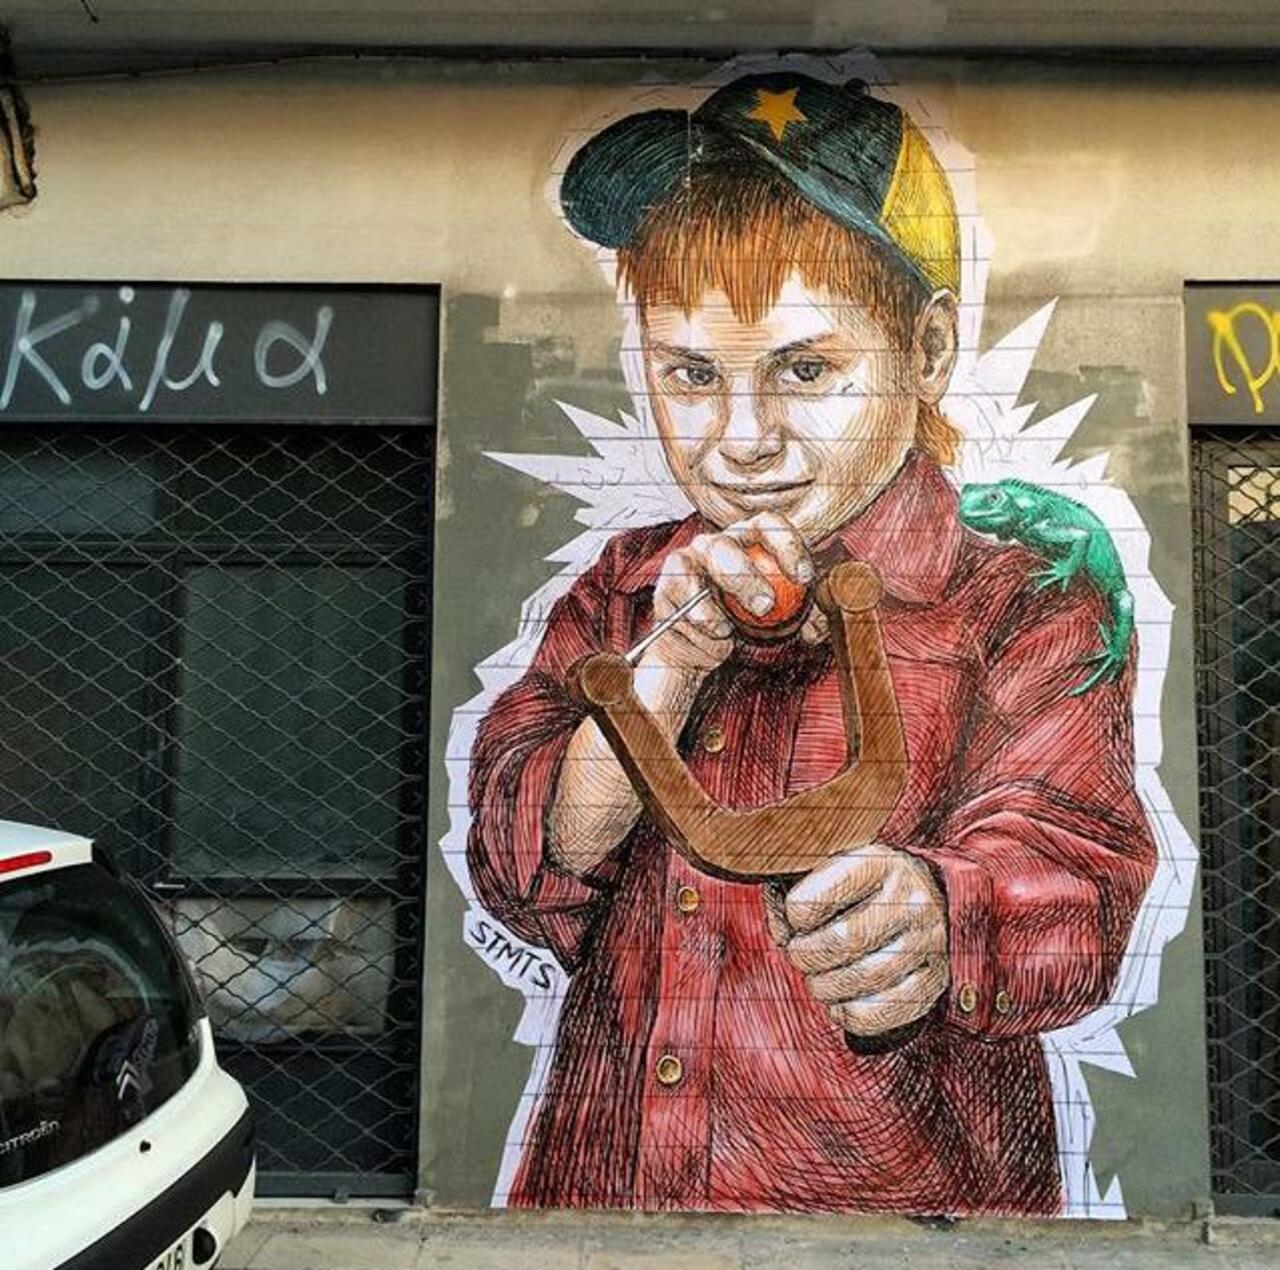 Street Art by STMTS in Athens

#art #graffiti #mural #streetart http://t.co/wLKRizjyD0